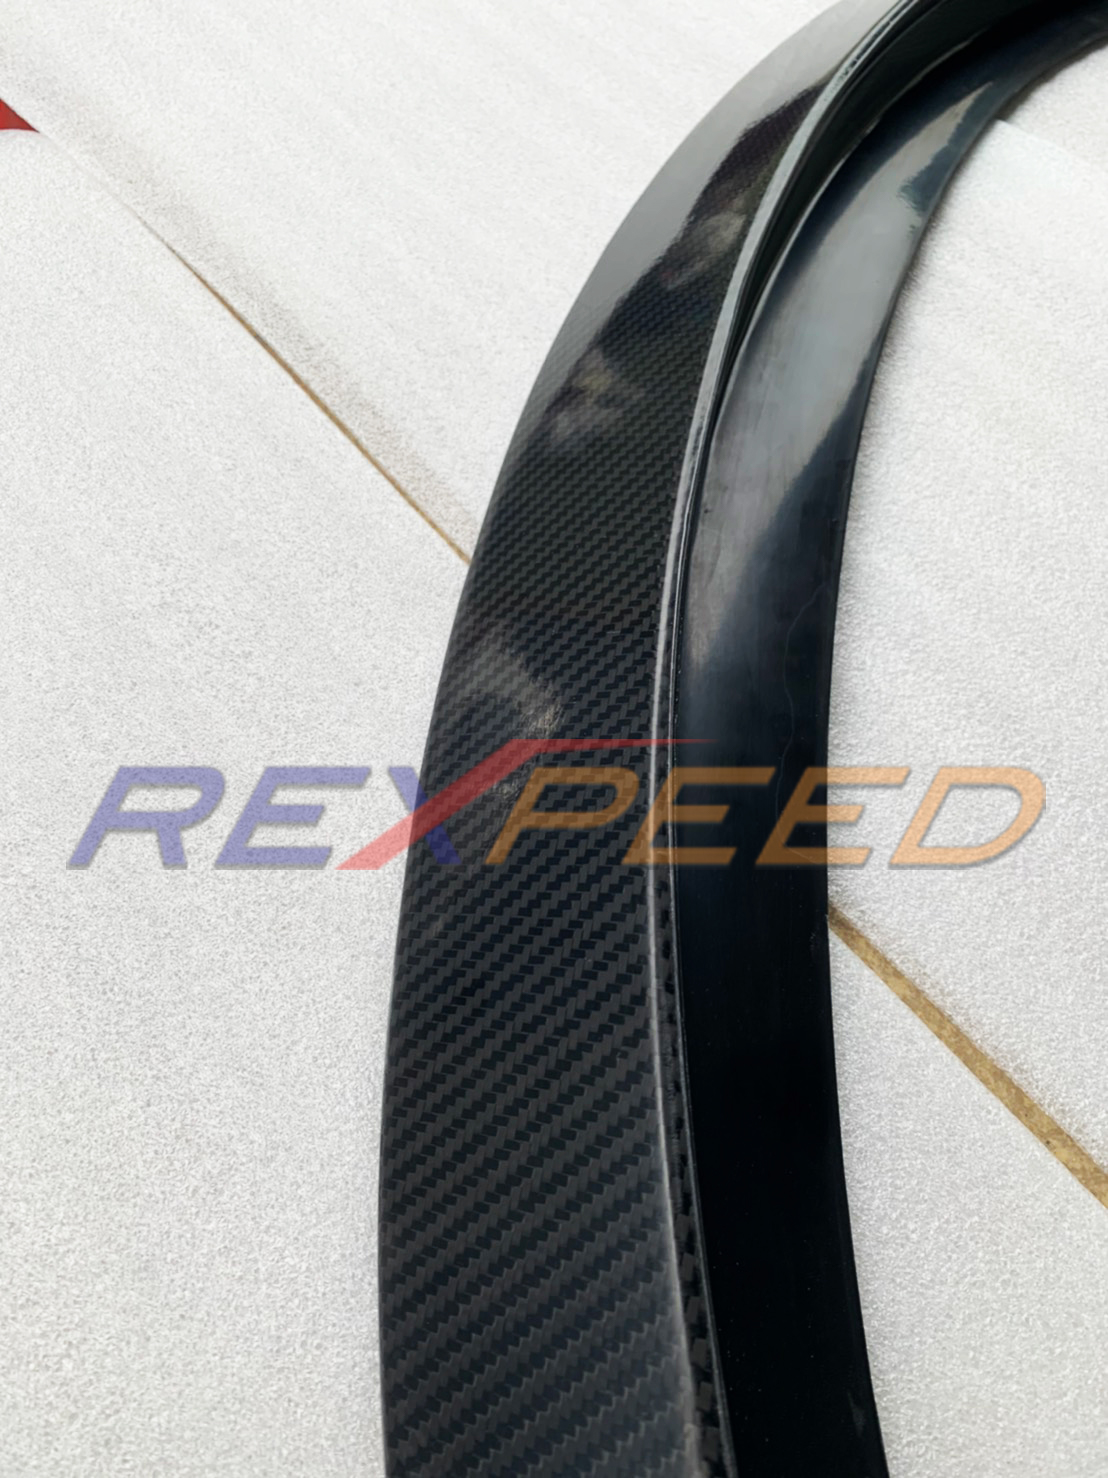 REXPEED: Final Testings for 2020 Supra V2 Carbon Fiber Spoiler & Fender ...